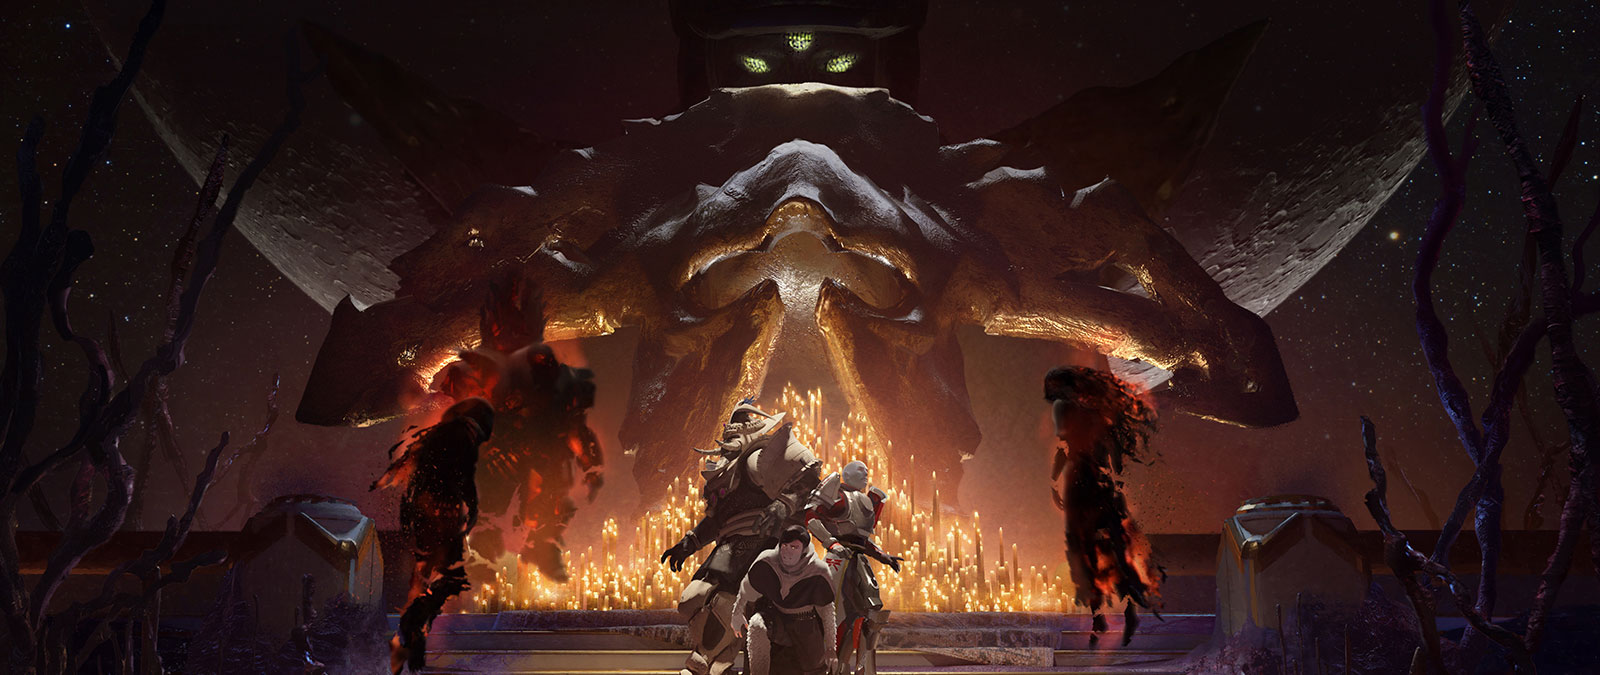 Traja šéfovia Nightmare pristupujú ku skupine vystrašených hráčov obklopených zapálenými sviečkami, zatiaľ čo Leviatan ich sleduje v pozadí. 